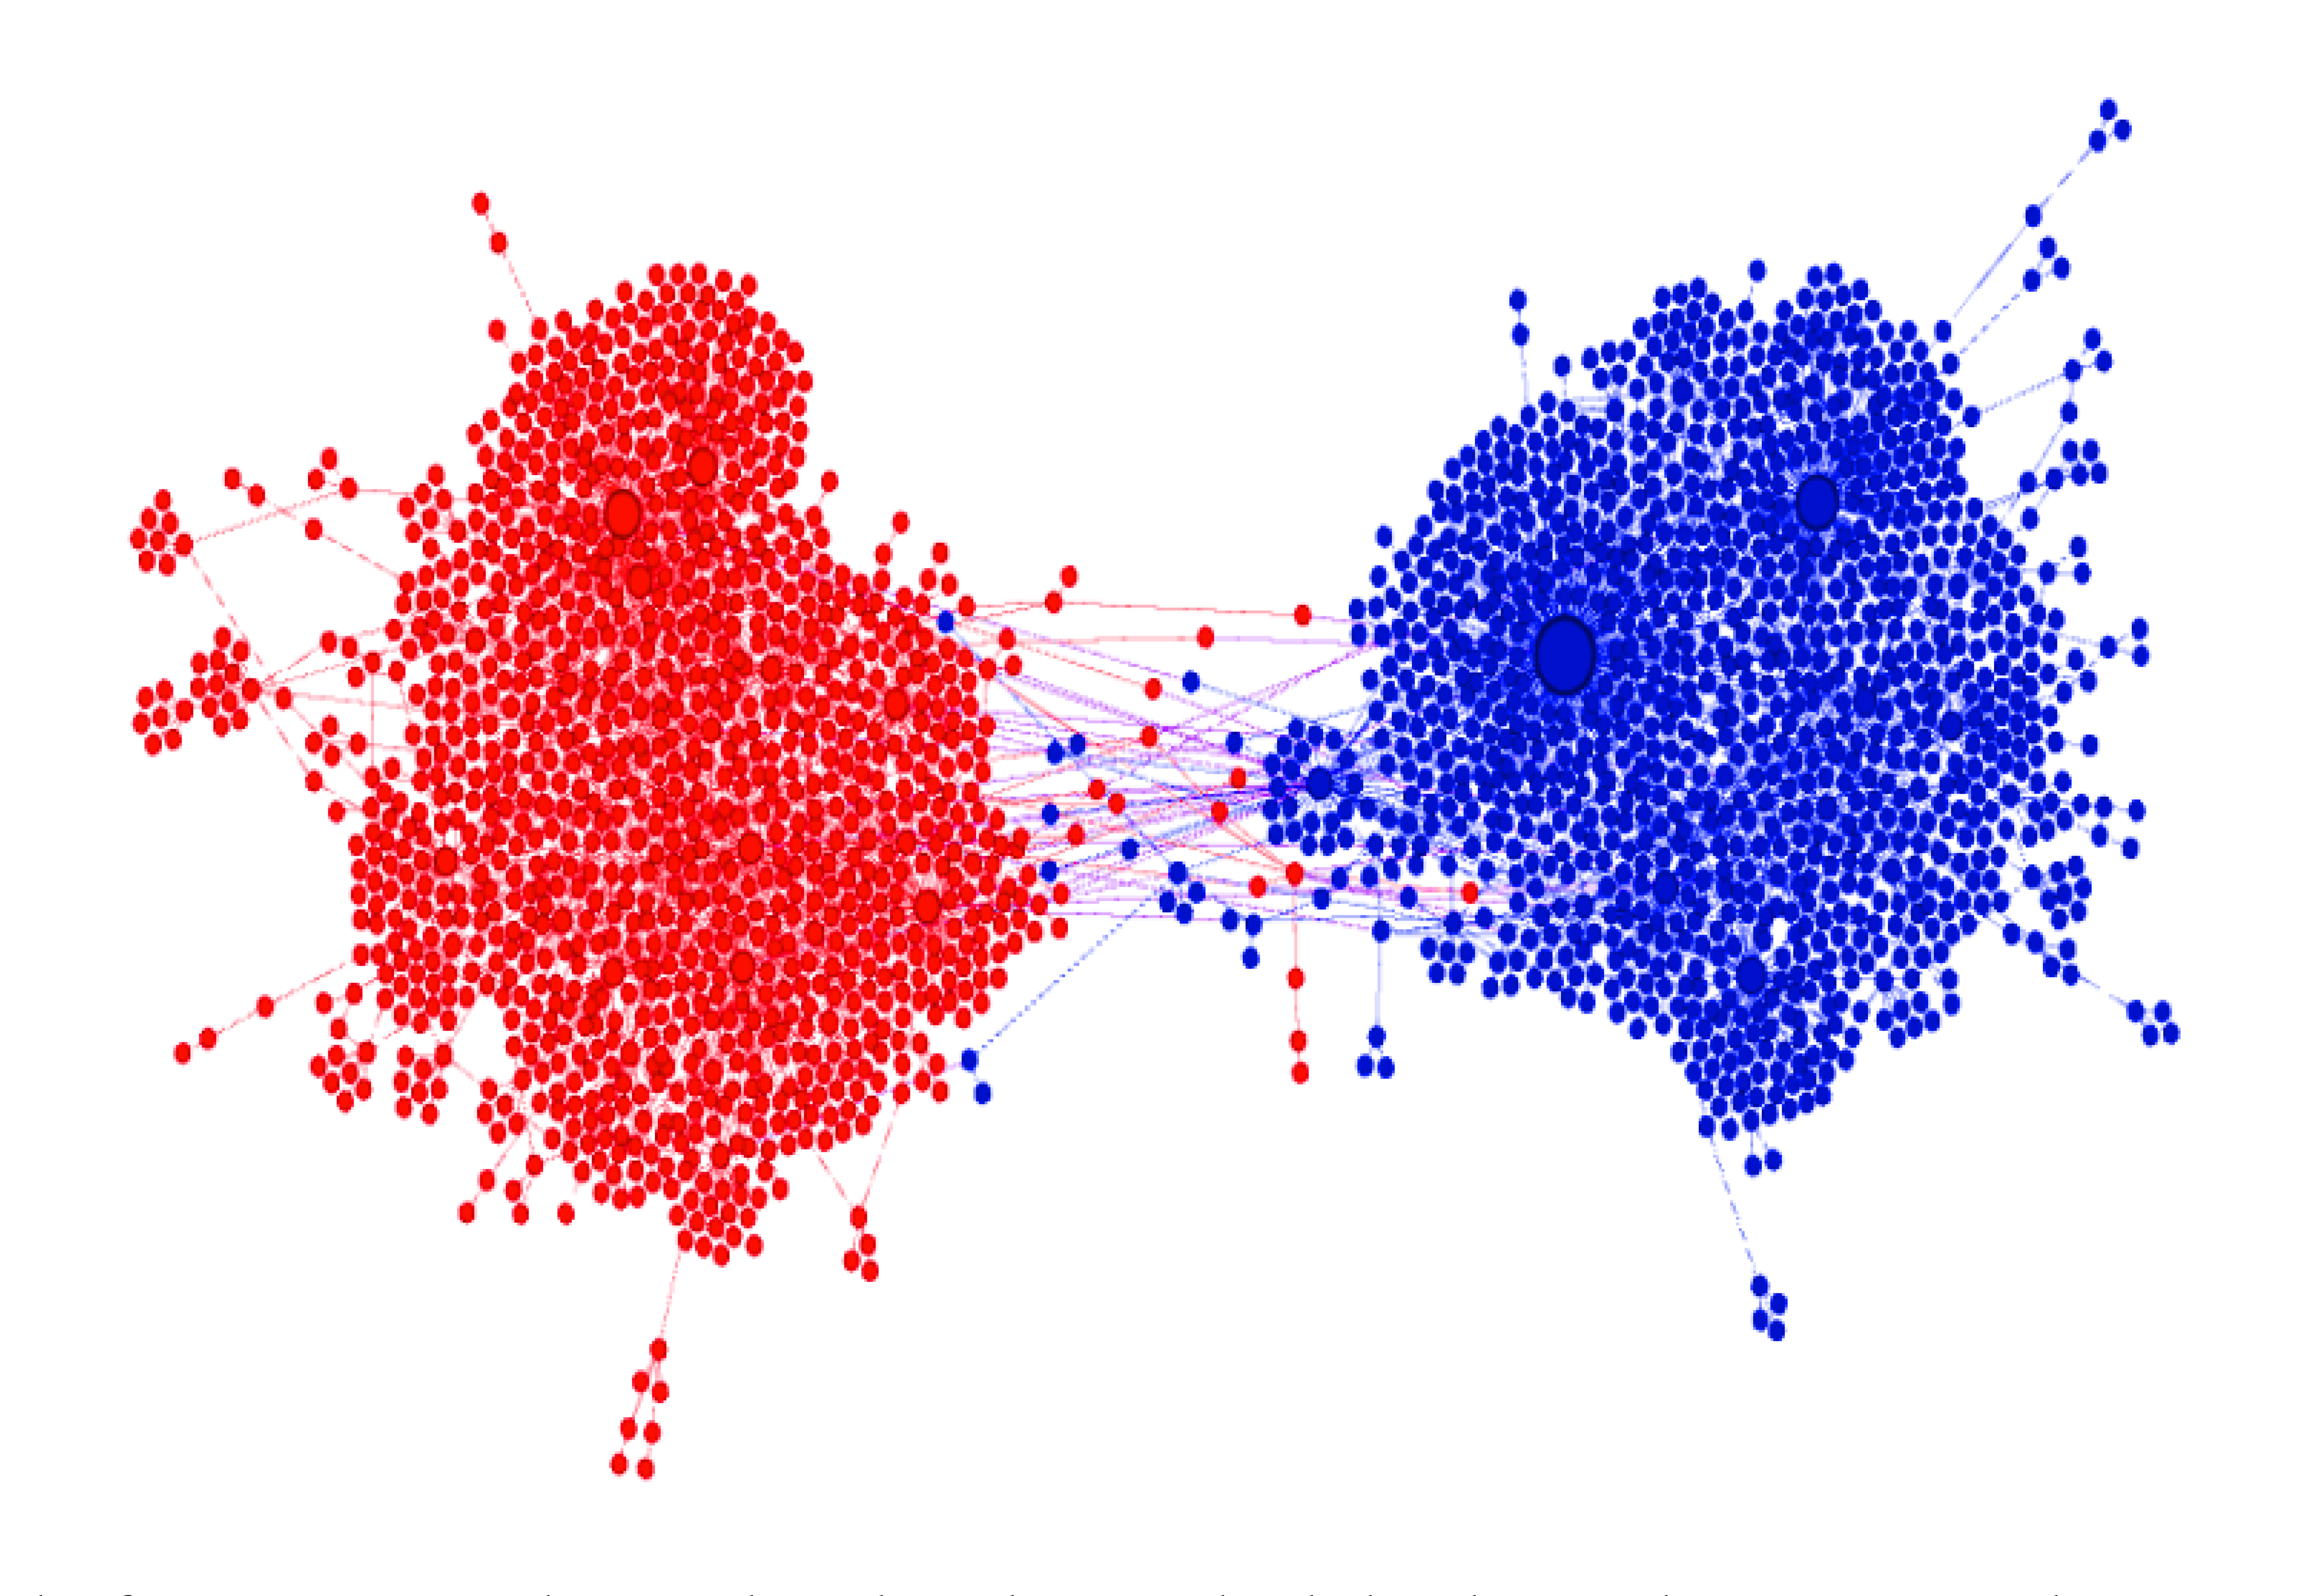 Figura 1. Cámaras de eco. En esta gráfica se representa como nodos, o círculos, a los usuarios de redes sociales. Las líneas que conectan a los usuarios son sus interacciones digitales a través de retweets. El color de los nodos corresponde a una posición positiva (rojo) o negativa (azul) respecto a un tema. Se observa cómo la gente con opiniones similares interacciona más entre sí y de este modo se adquiere una falsa sensación de consenso. Tomado de23.